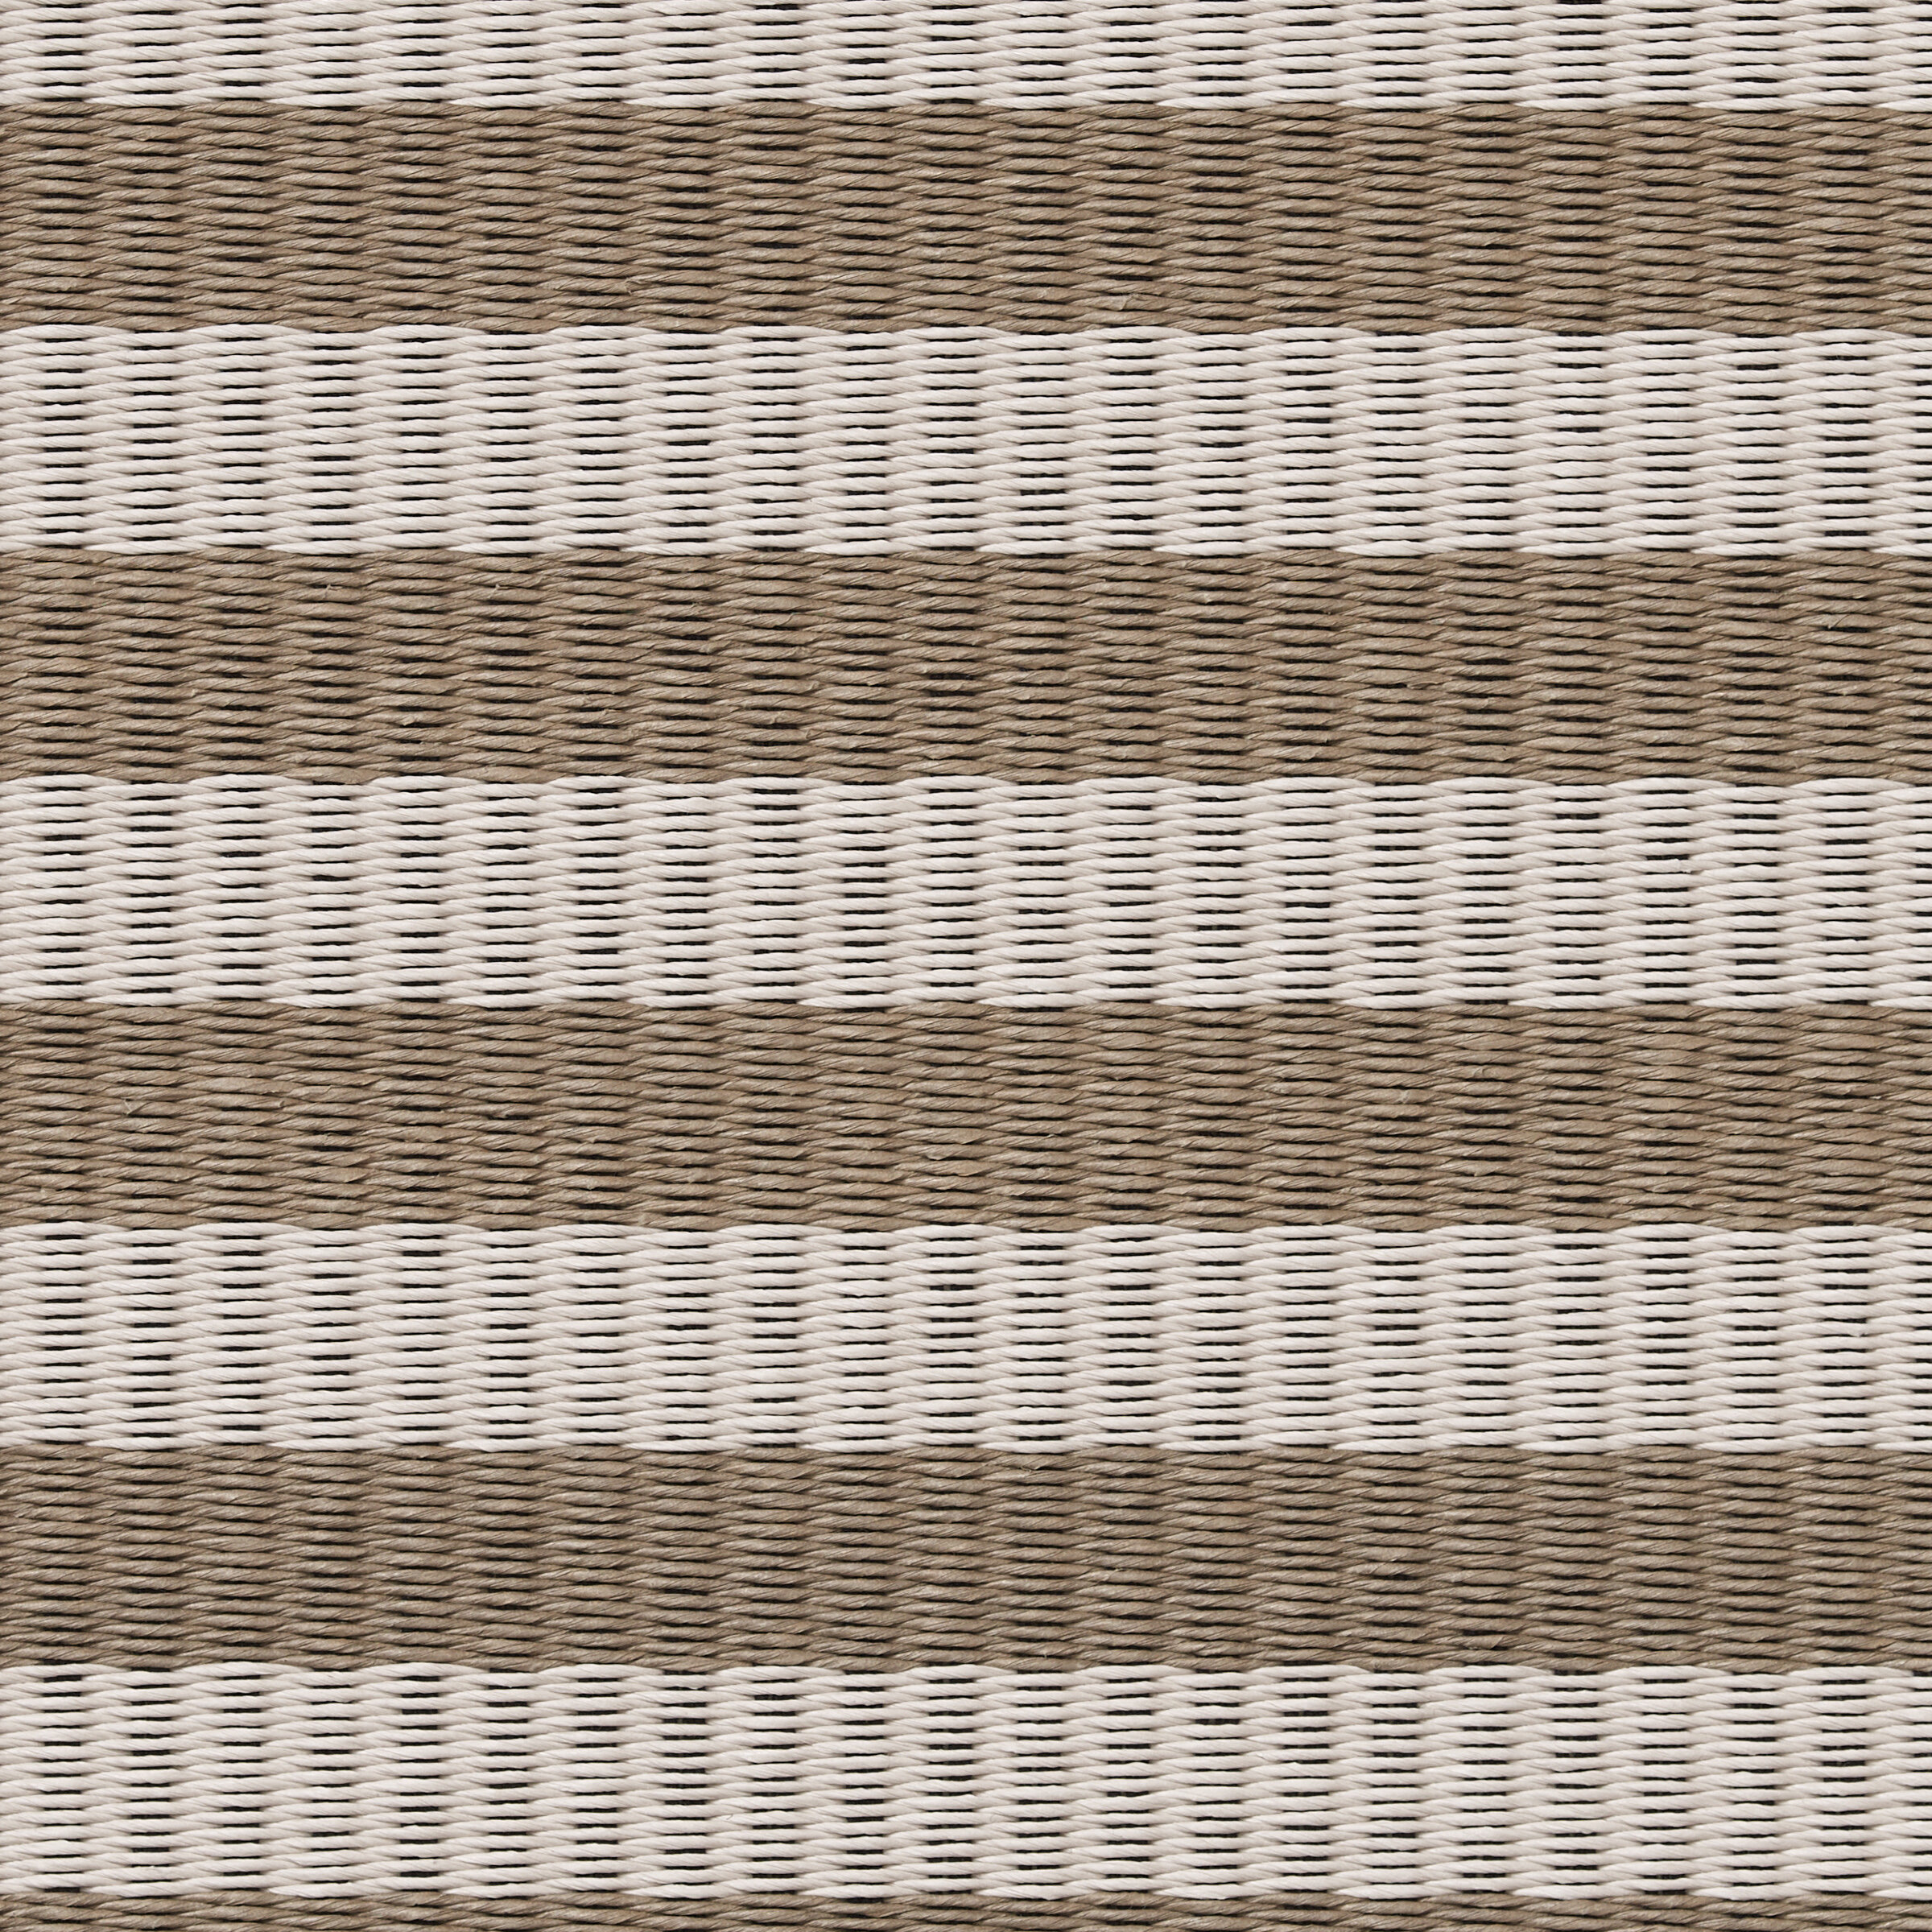 Design Stripe Colour stone-nutria